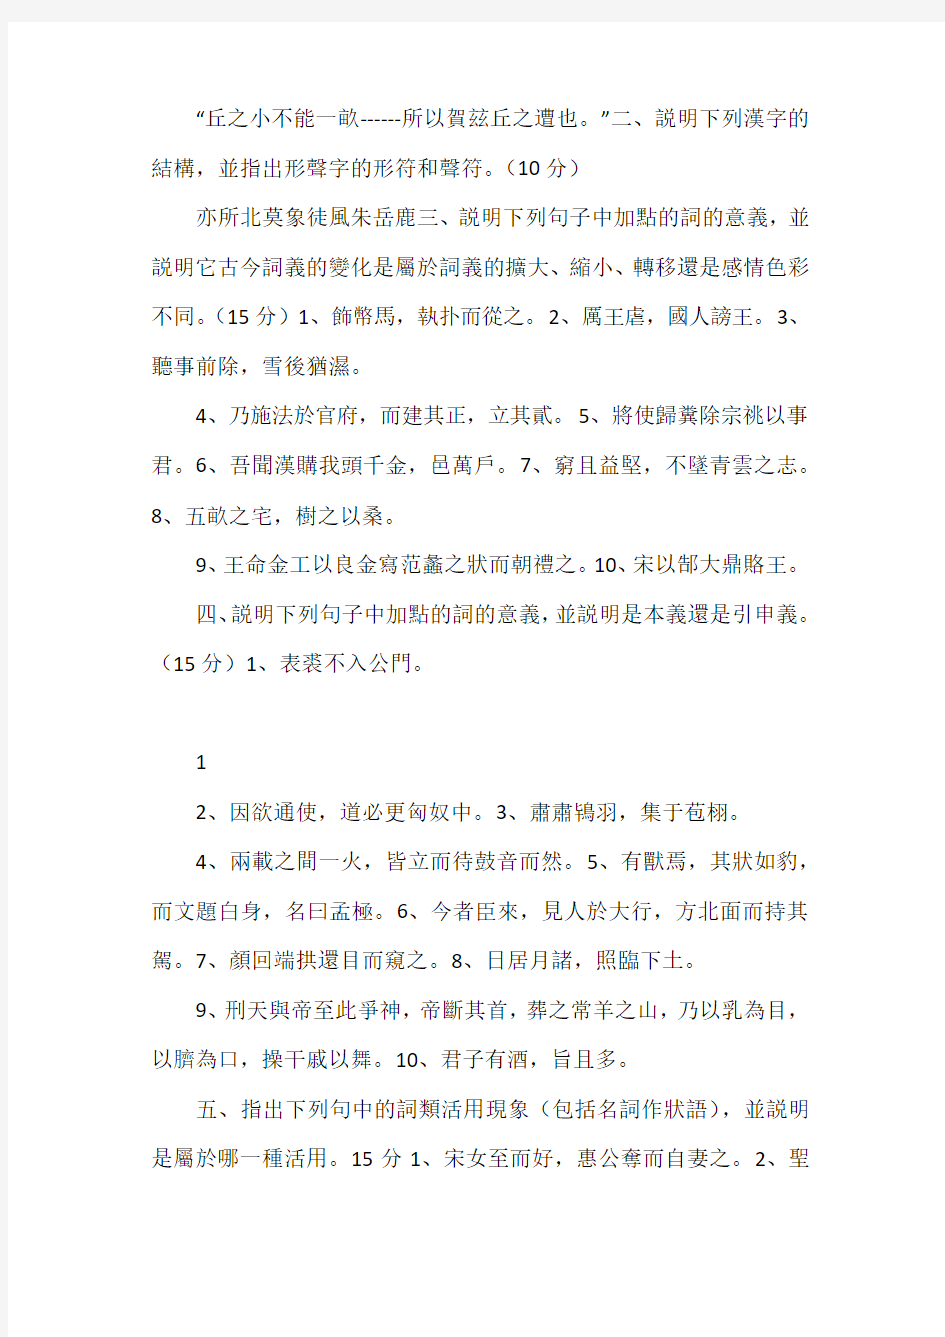 陕西师范大学古代汉语期末试题集锦(含答案)免费下载